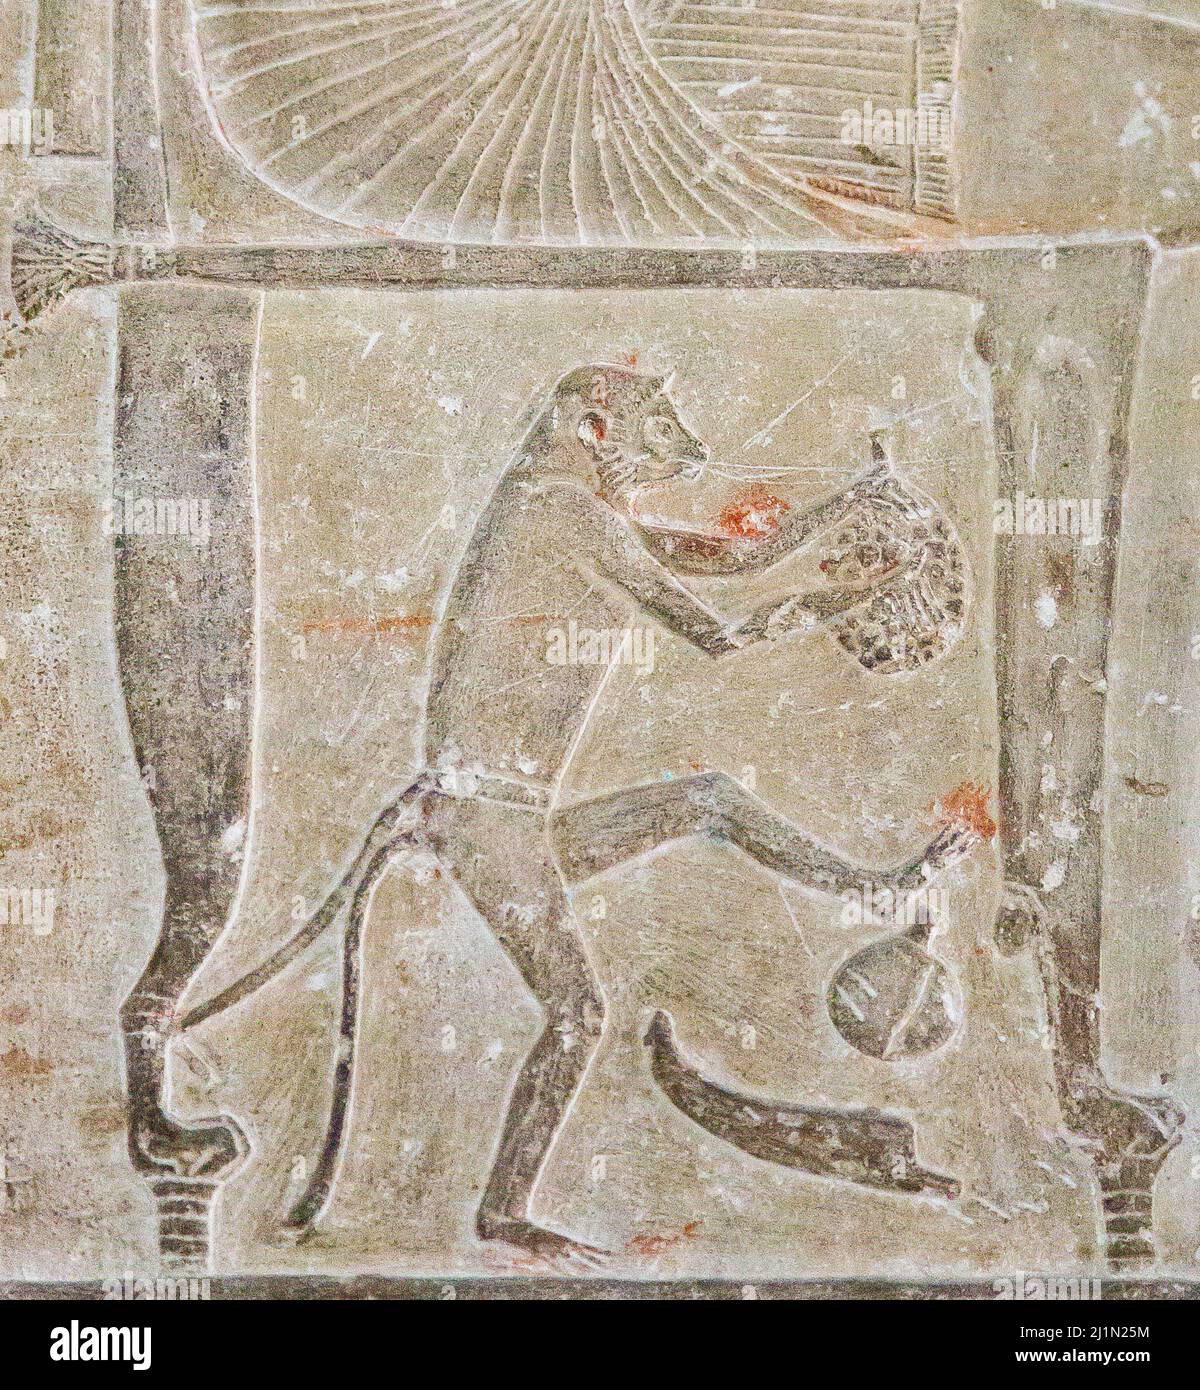 Le Caire, Musée égyptien, de Saqqara, tombeau de Ptahmose. Sous la chaise du défunt, un petit singe mange des fruits. Banque D'Images